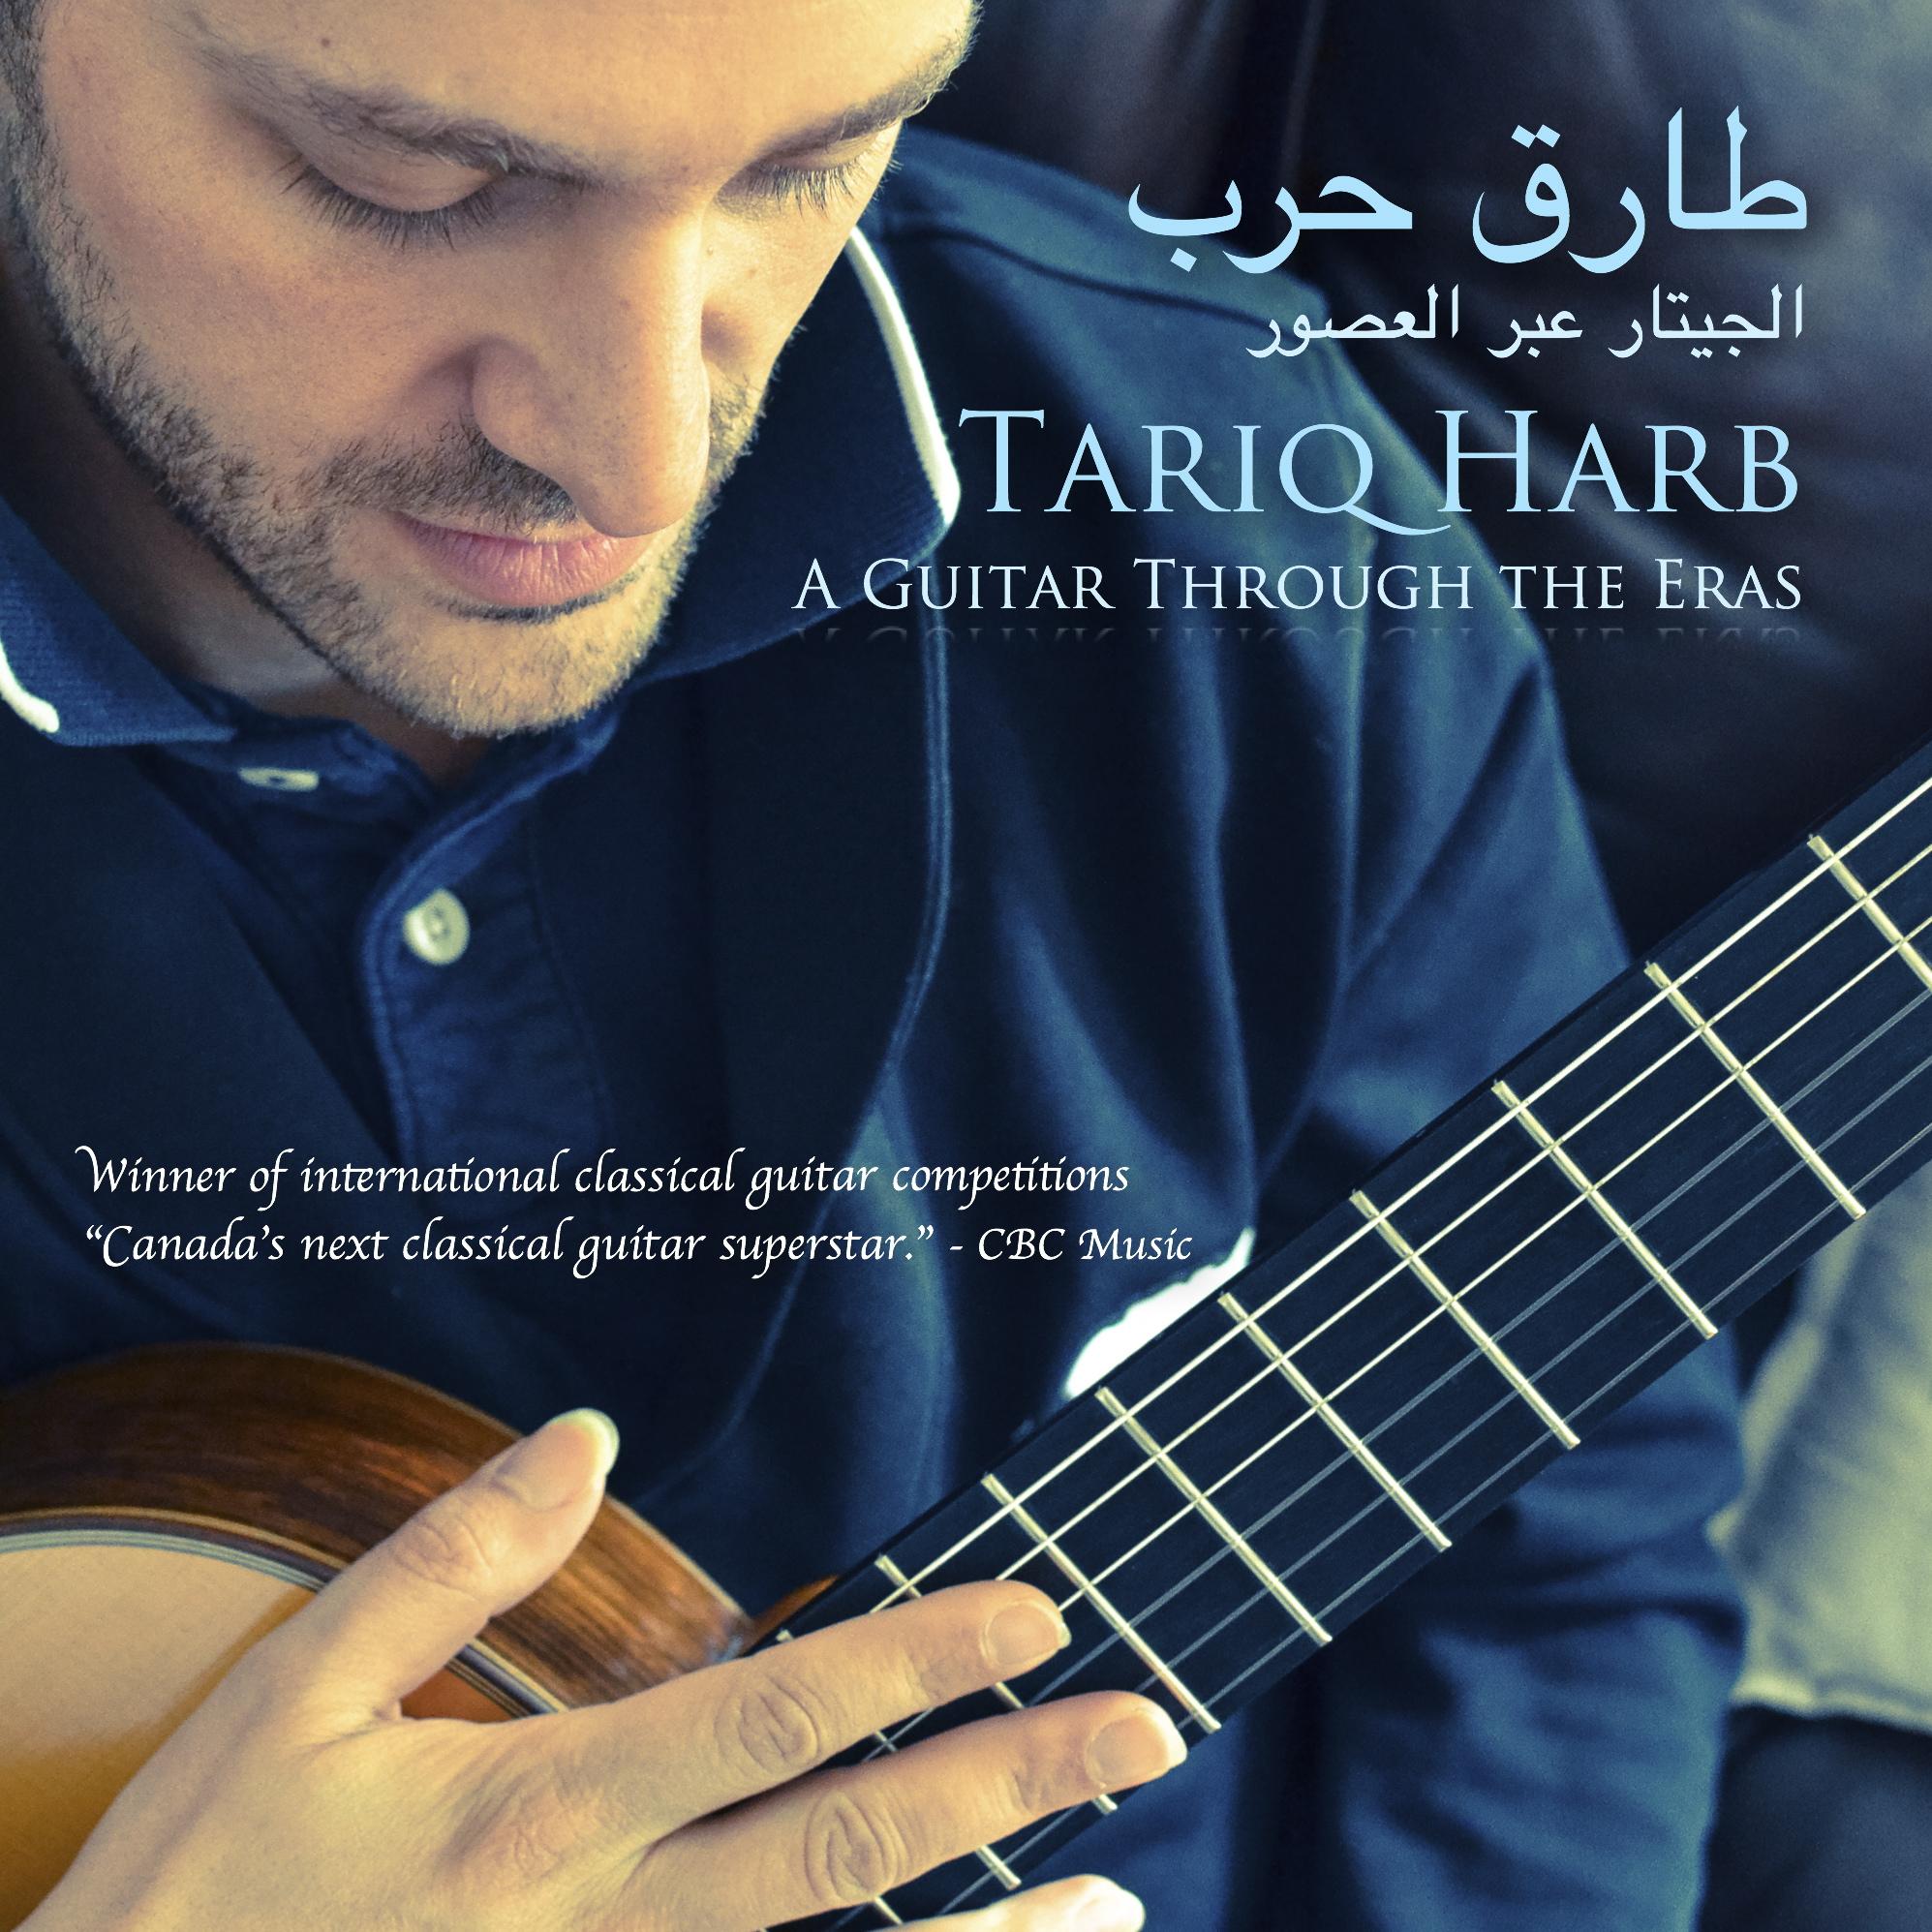 A Guitar Through the Eras- Tariq Harb